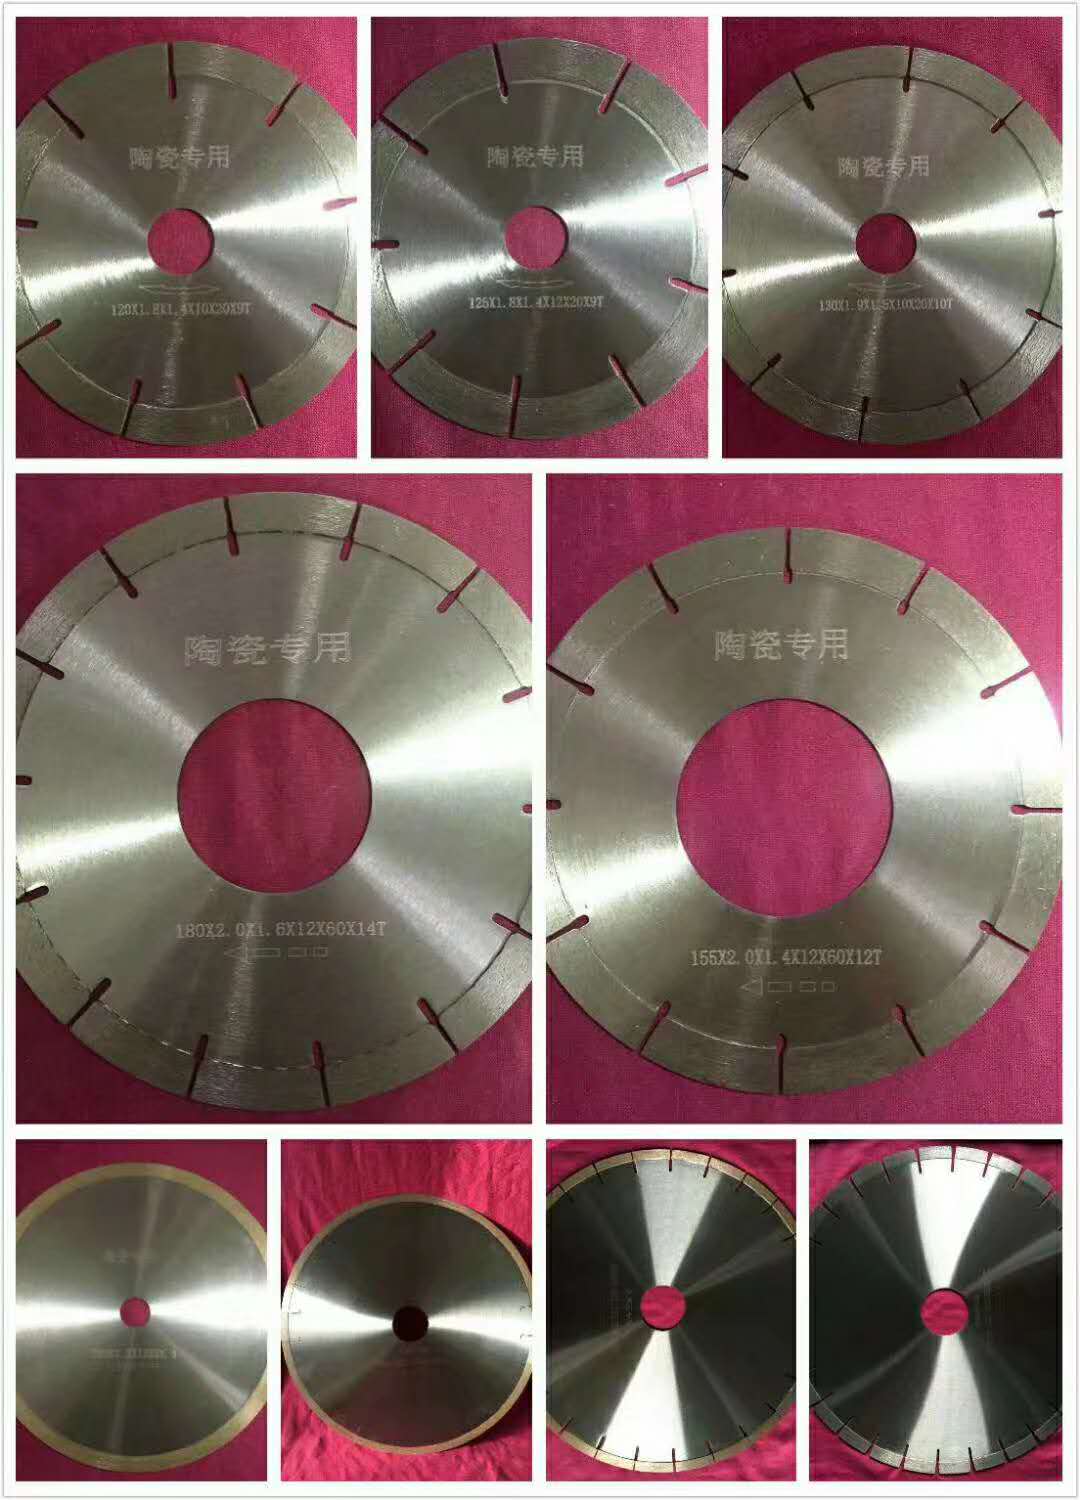 diamond cut off wheel creamic cutting wheel